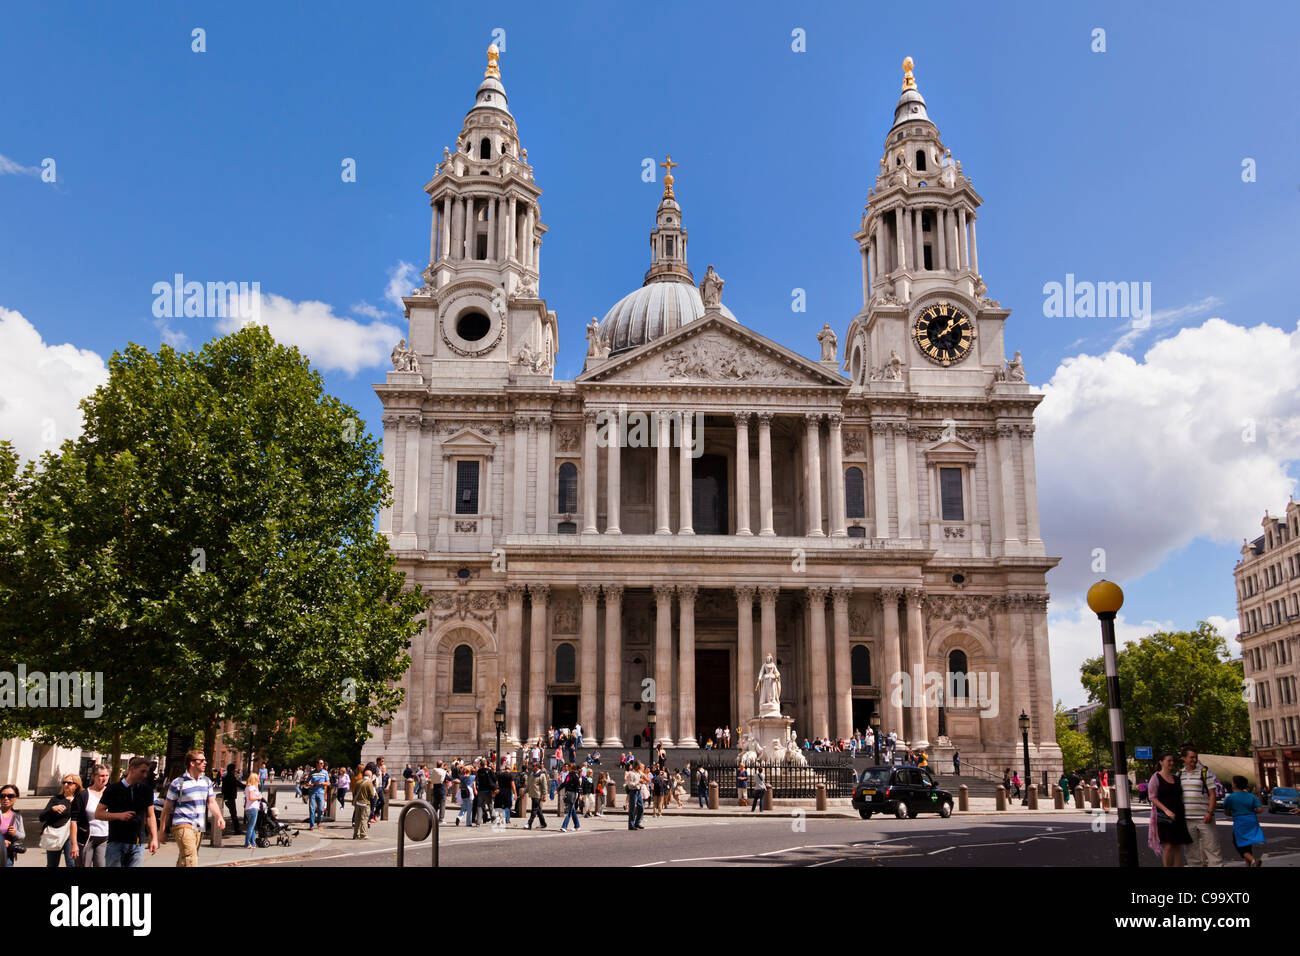 Grande porte de l'Ouest, la Cathédrale St Paul, Ludgate Hill, City of London, Londres, Angleterre, Royaume-Uni Banque D'Images